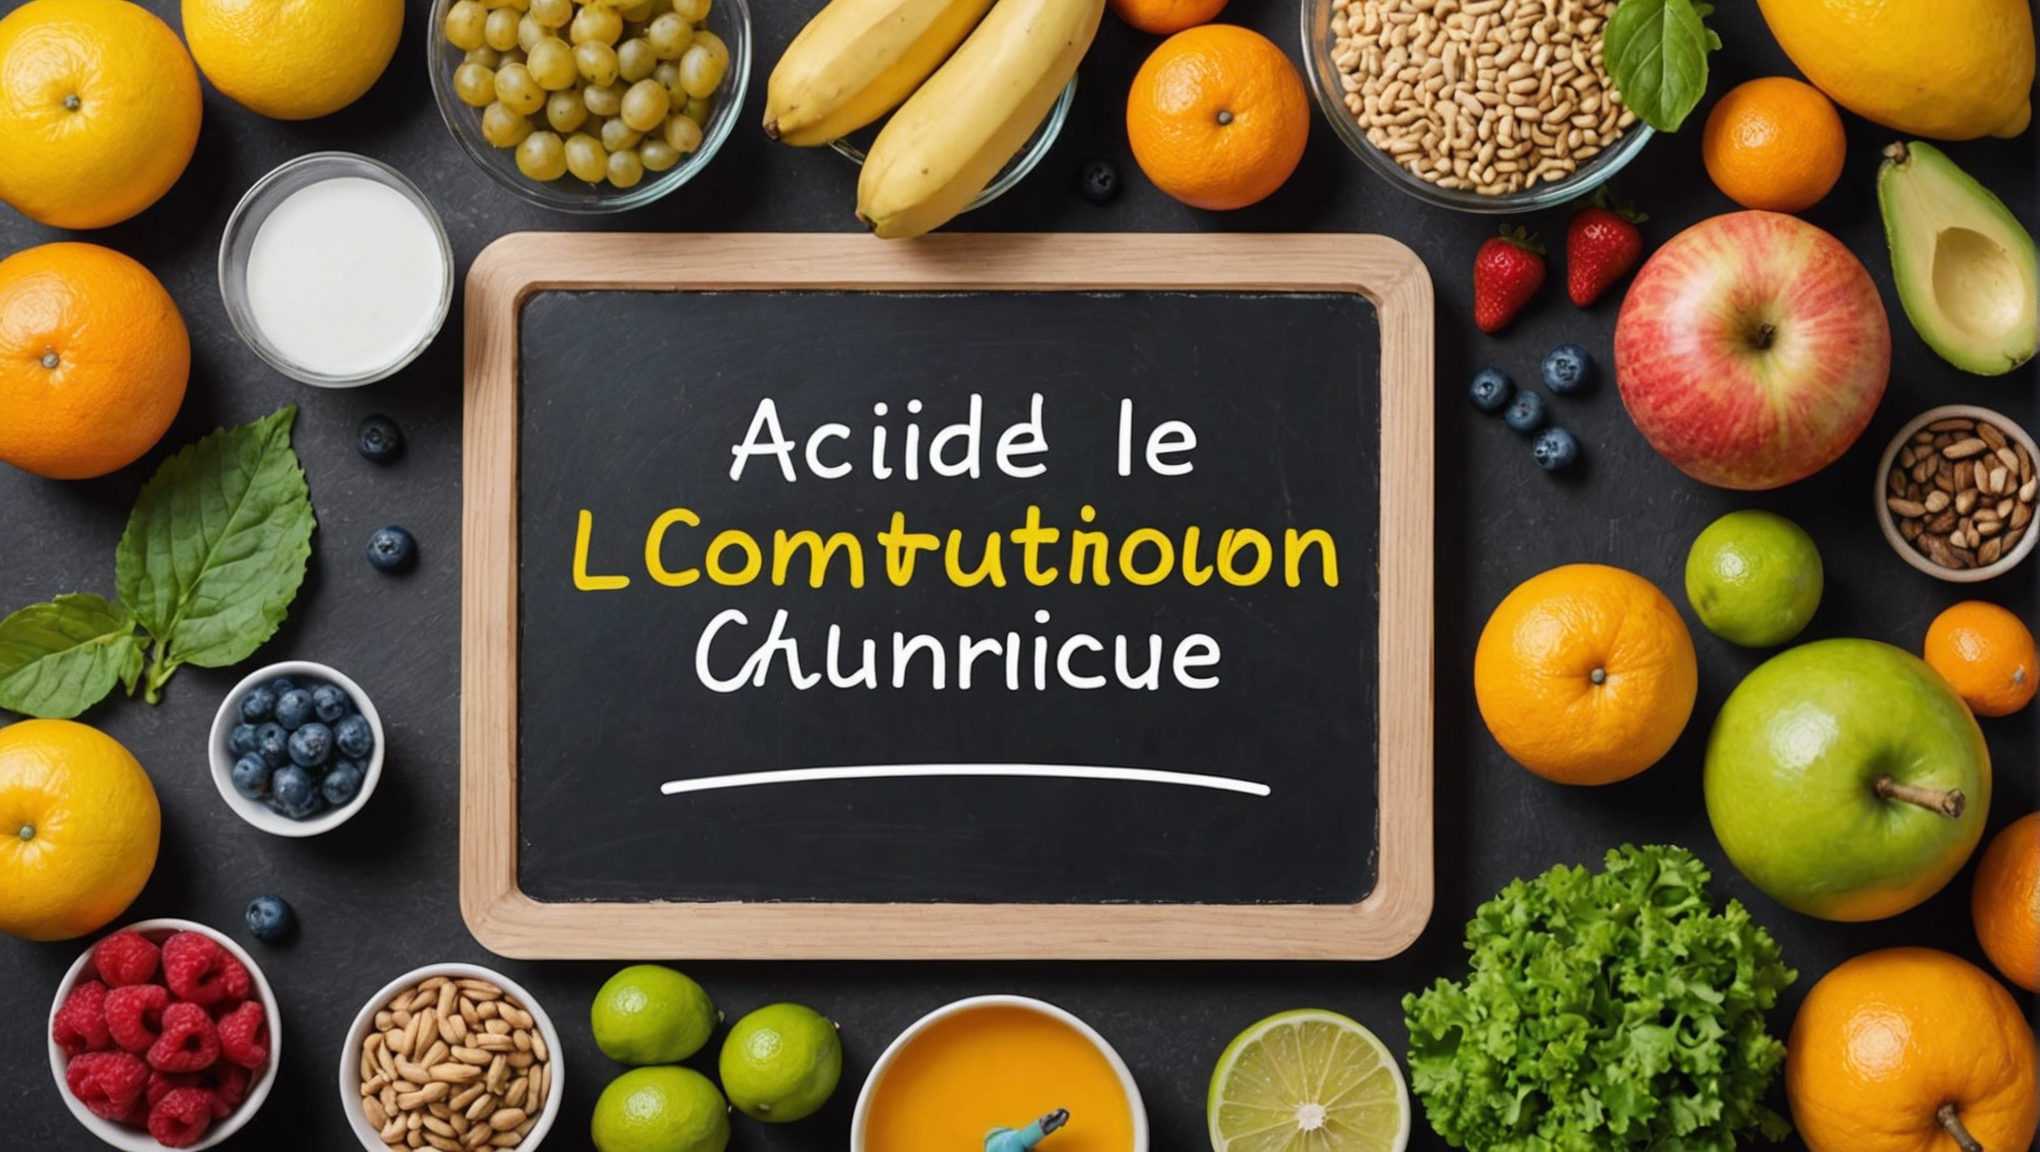 découvrez comment contrôler et réduire l'acide urique dans votre alimentation avec nos conseils pratiques et des recommandations pour une meilleure santé.